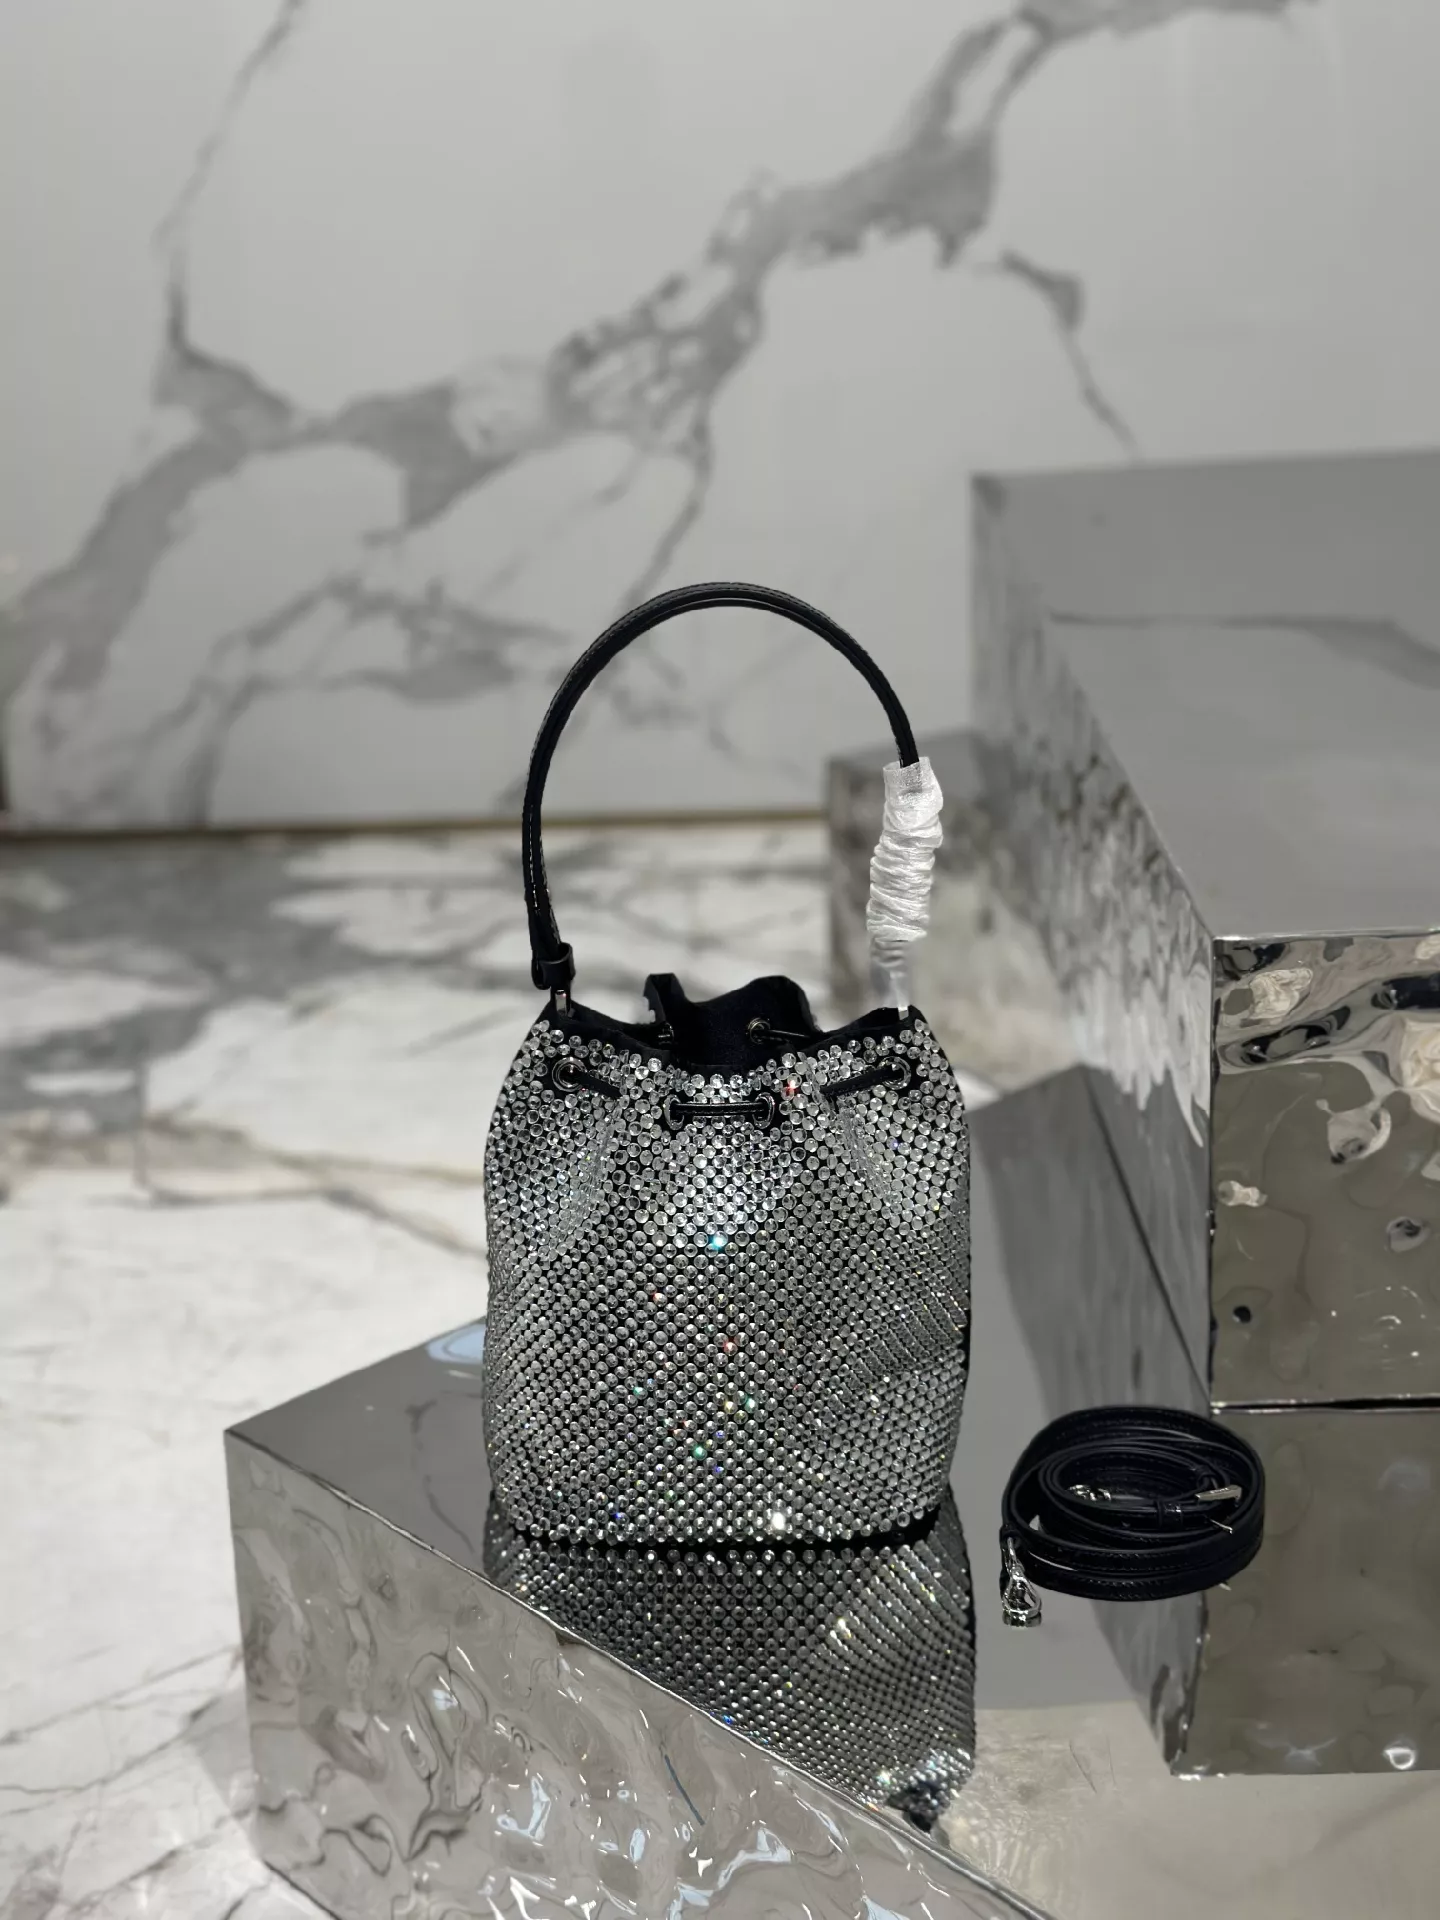 Crystal Mesh Bucket Handbags